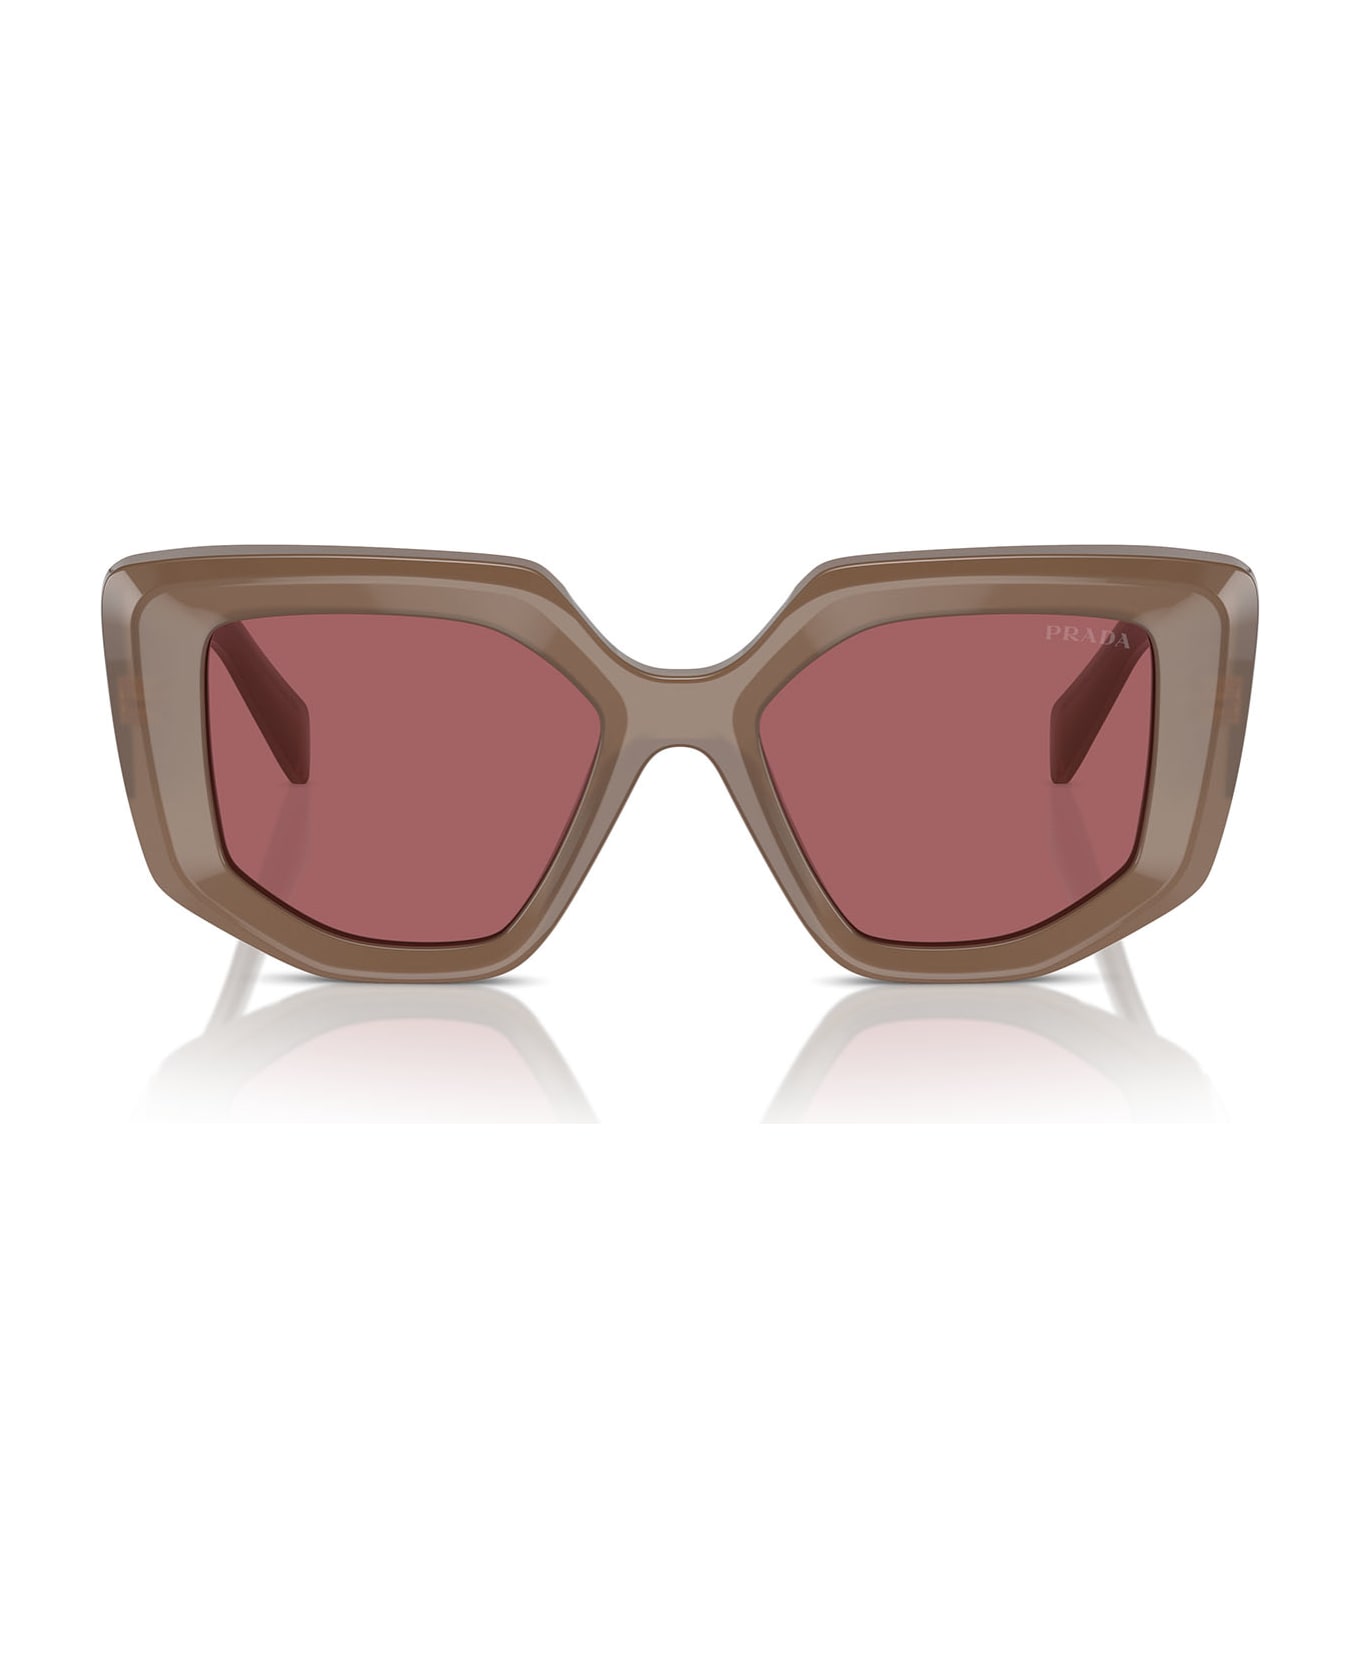 Prada Eyewear Pr 14zs Opal Loden Sunglasses - Opal Loden